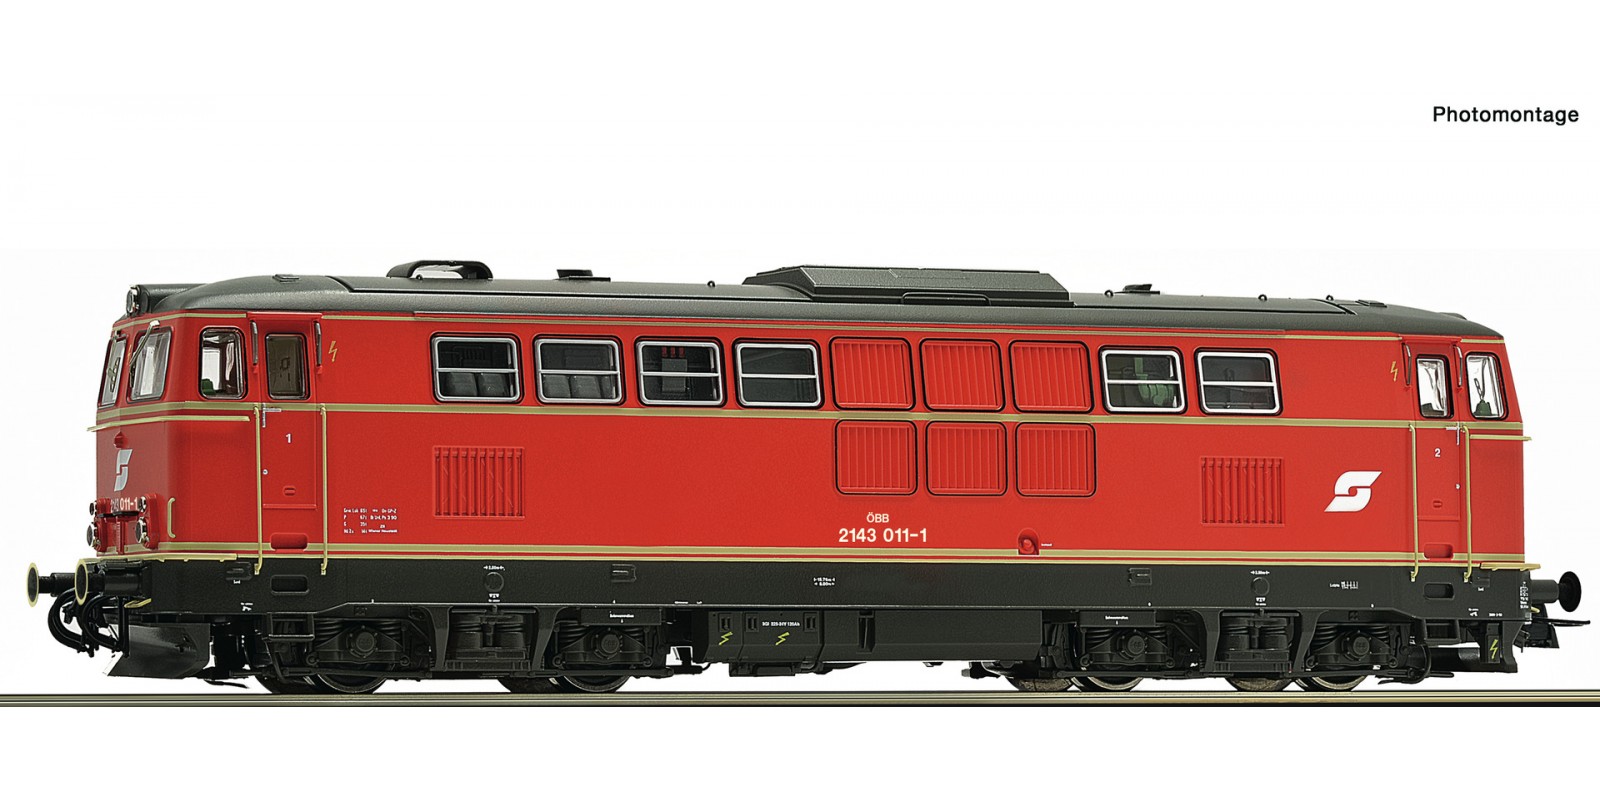 RO70714 Diesel locomotive 2143 011-1